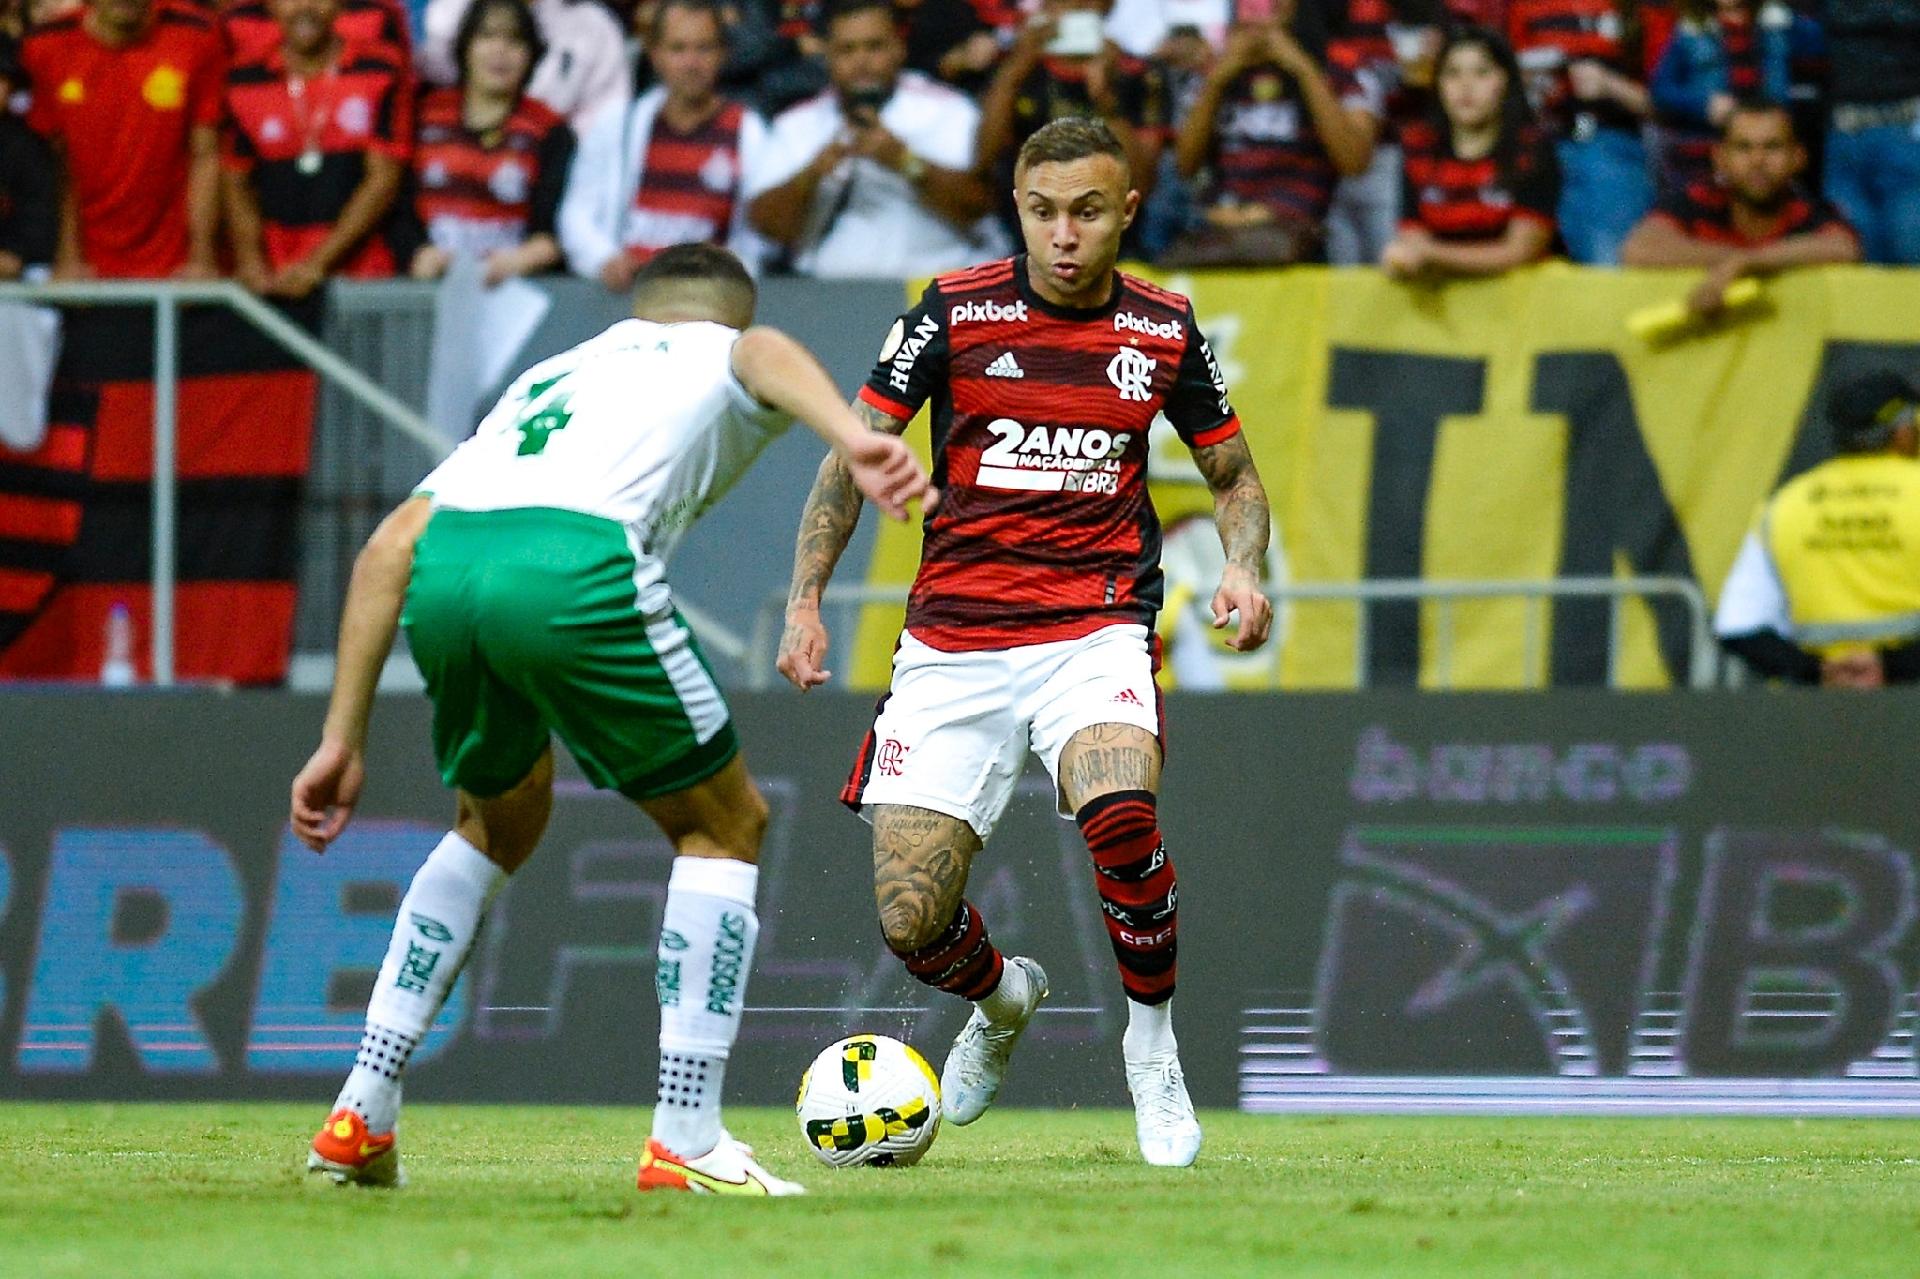 Futebol ao vivo: Flamengo x Juventude - assistir jogo de hoje - CenárioMT